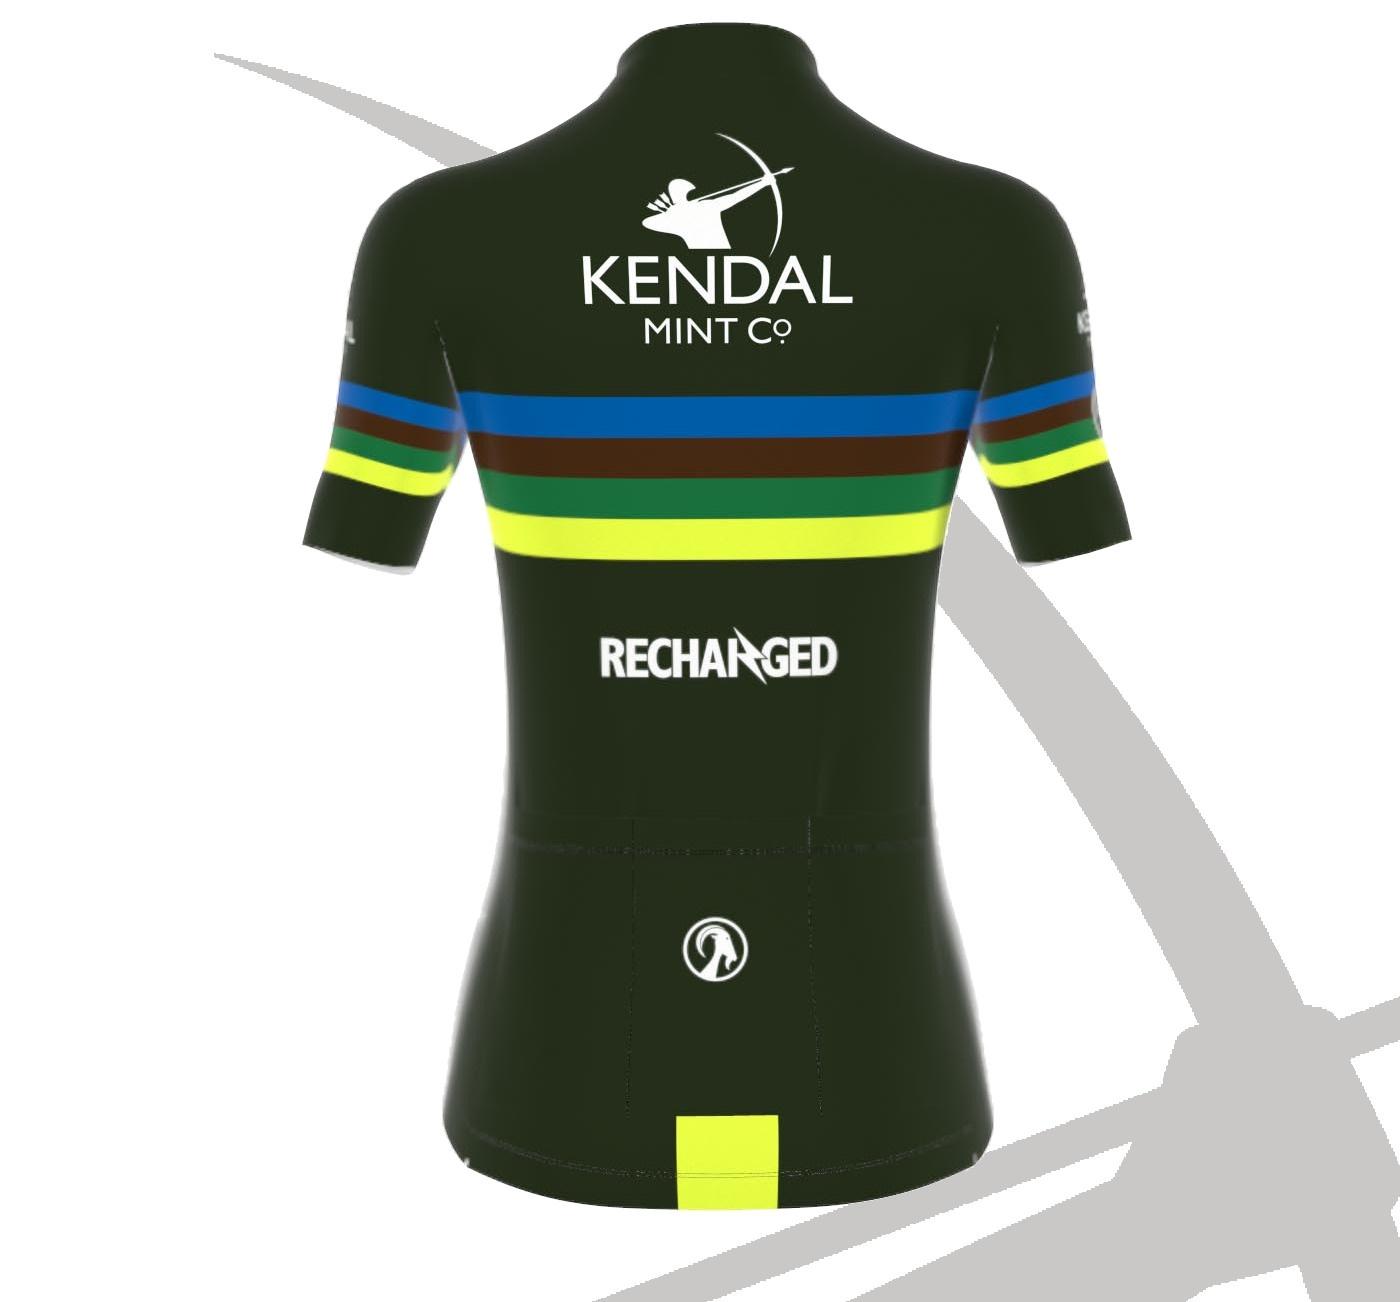 Kendal Mint Co® X Stolen Goat Bodyline Cycling Jersey - Women's (2021)